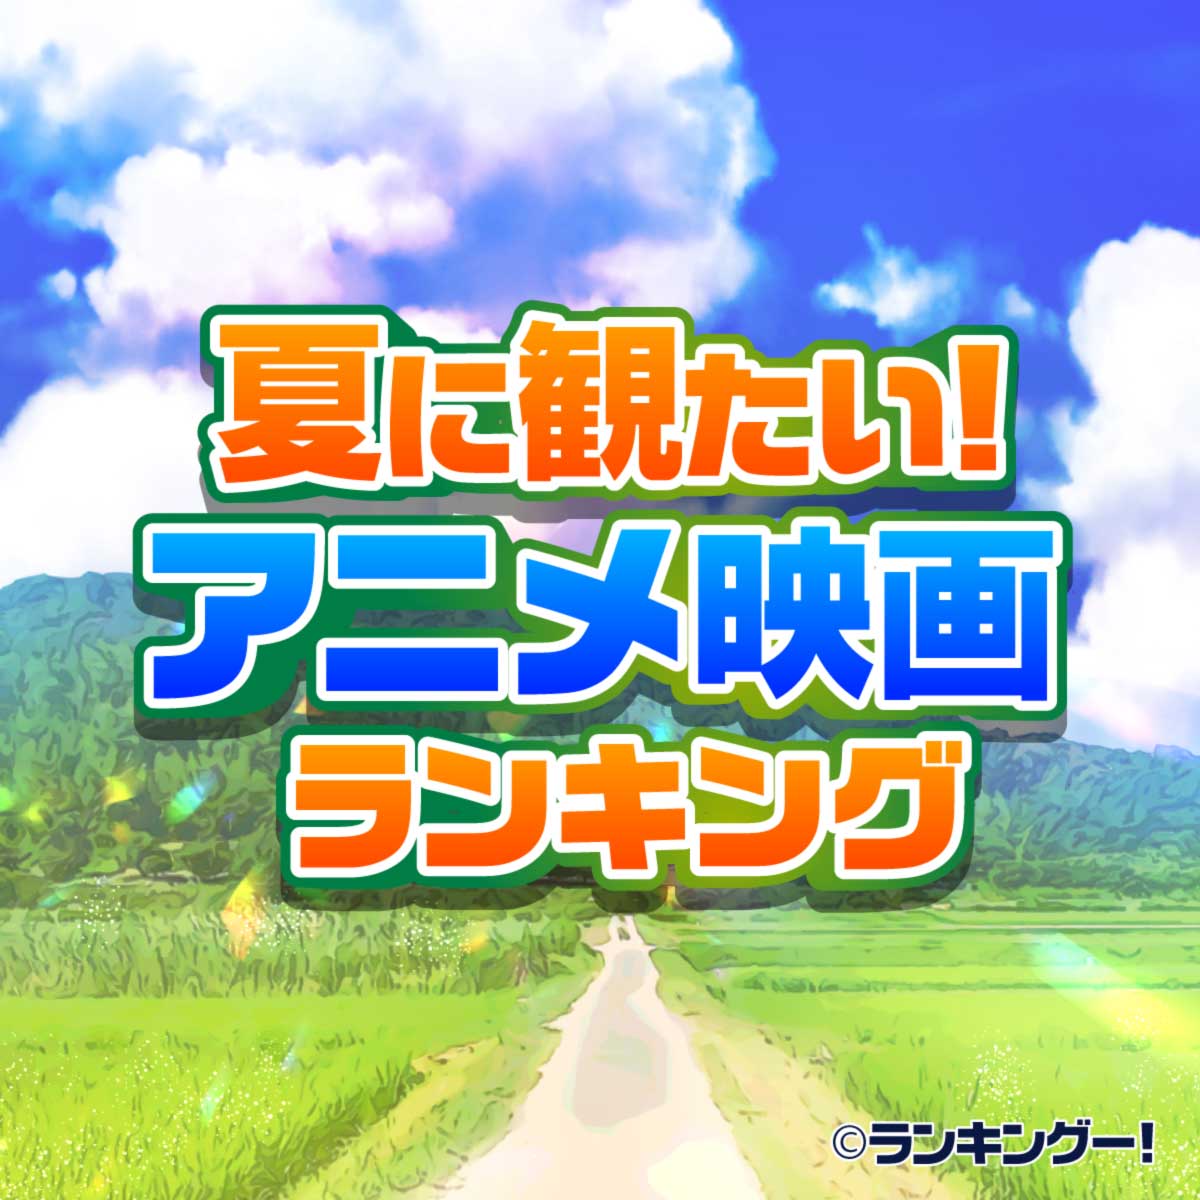 夏におすすめ エモいアニメ映画ランキングtop20 感動の名作 16 20位 ランキングー